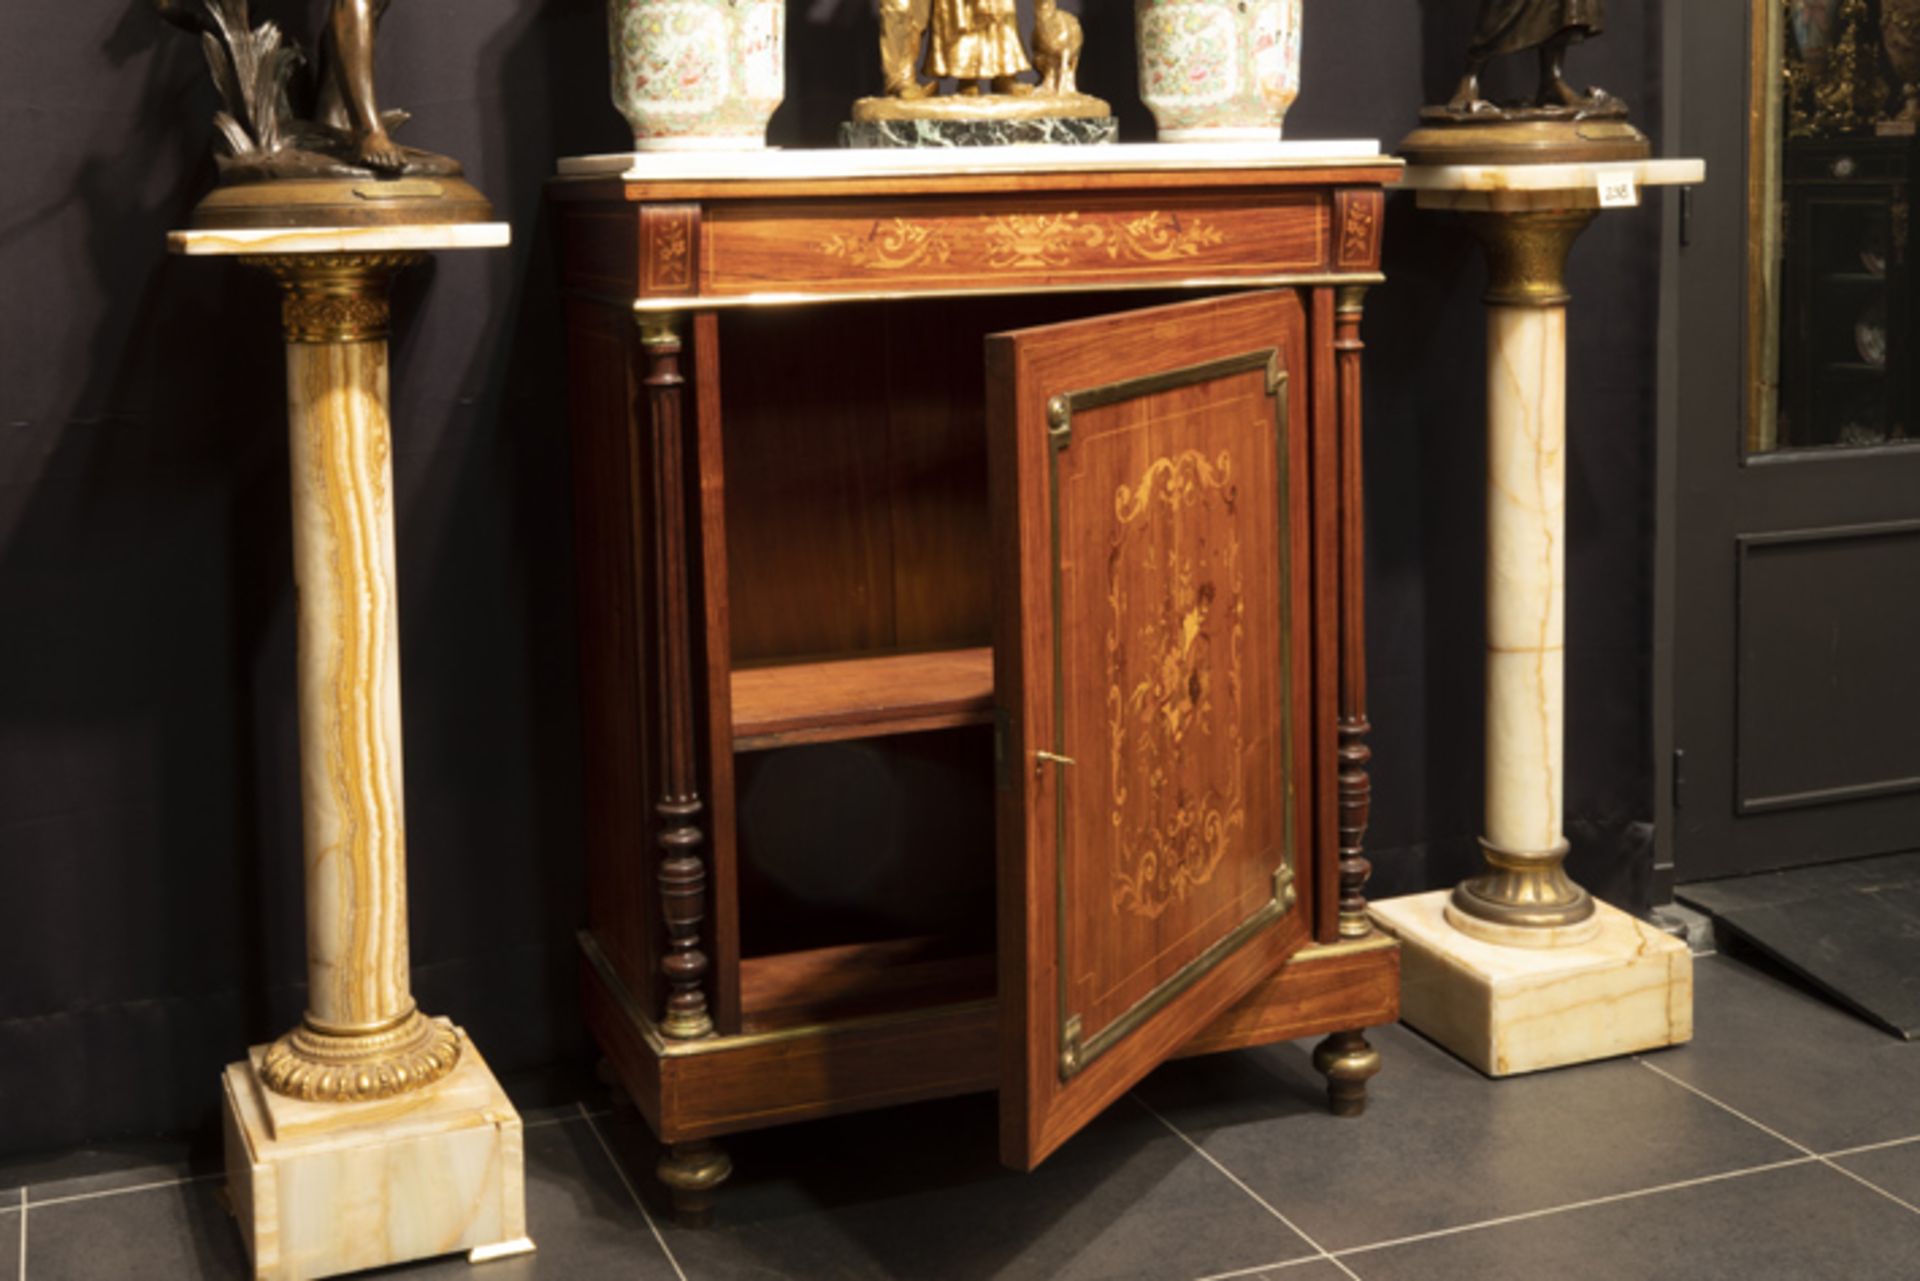 FRANKRIJK - 19° EEUW neoclassicistisch meubel in marqueterie versierd met koper- en [...] - Image 2 of 3